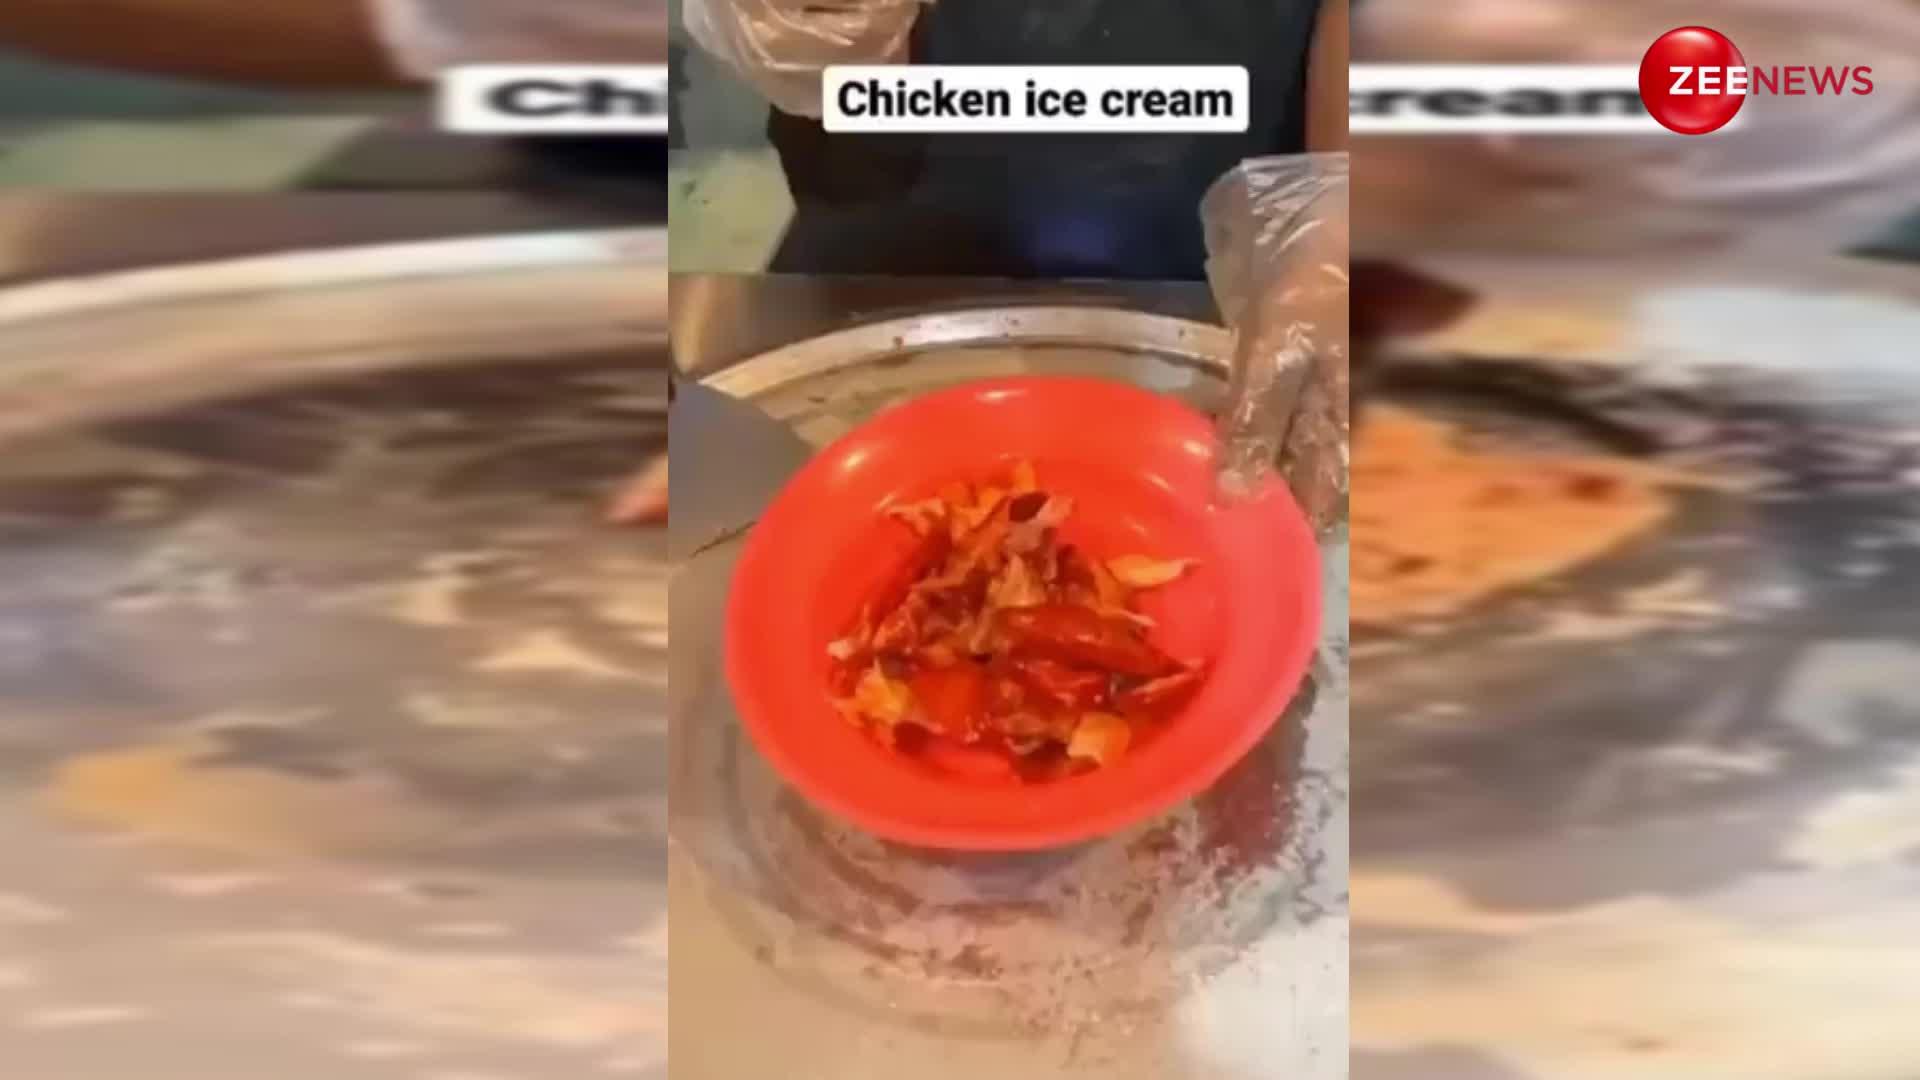 मार्केट में आईं तंदूरी चिकन आइसक्रीम, जिसको देख लोगों लगा बड़ा झटका